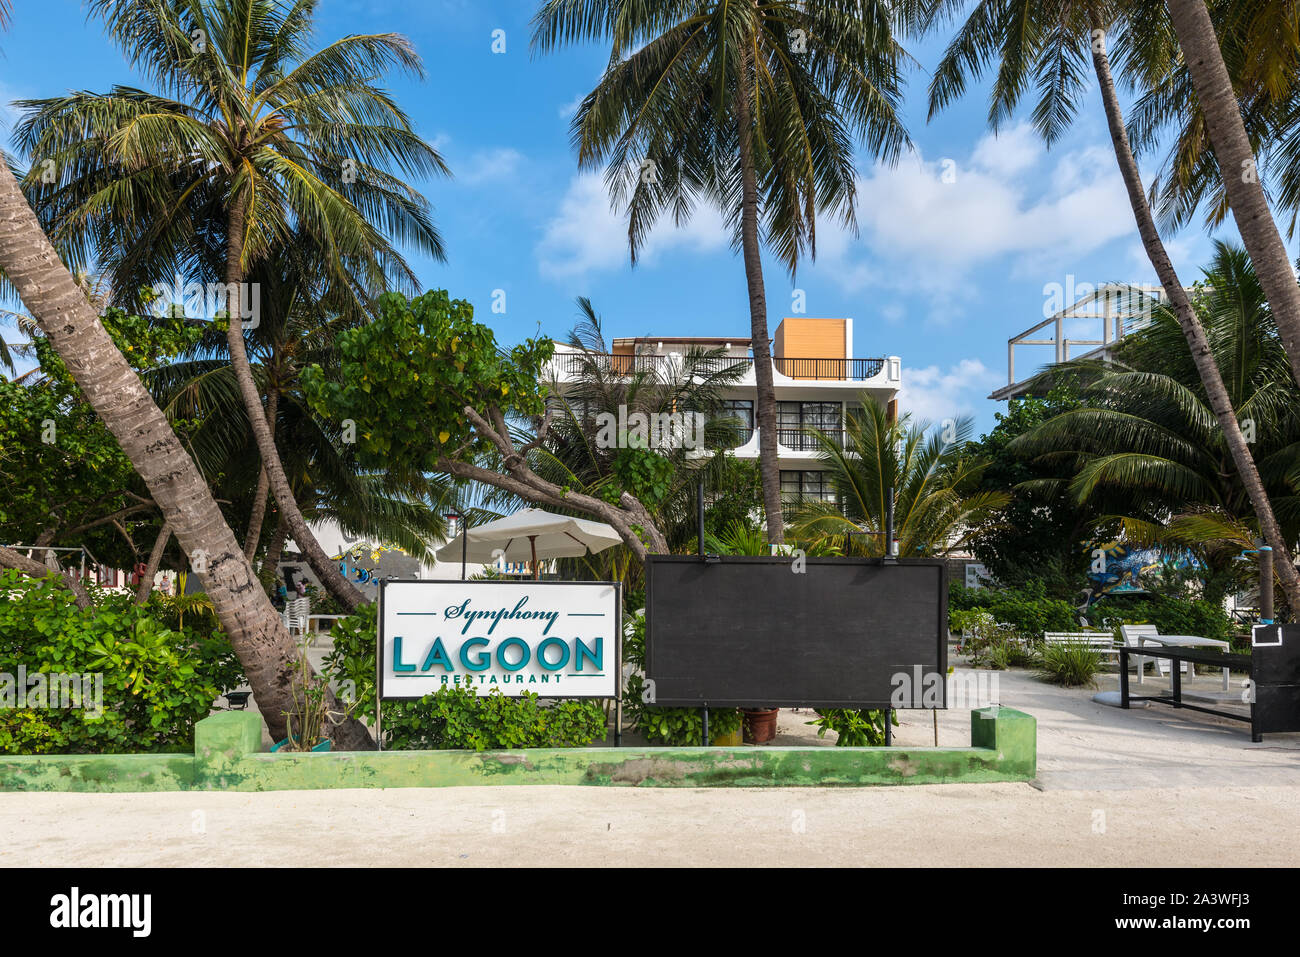 L'île de Maafushi, Maldives - Novembre 17, 2017 : Avis de Symphony Lagoon Restaurant dans l'île de Maafushi, Maldives, Atoll de Kaafu, en Asie. Banque D'Images